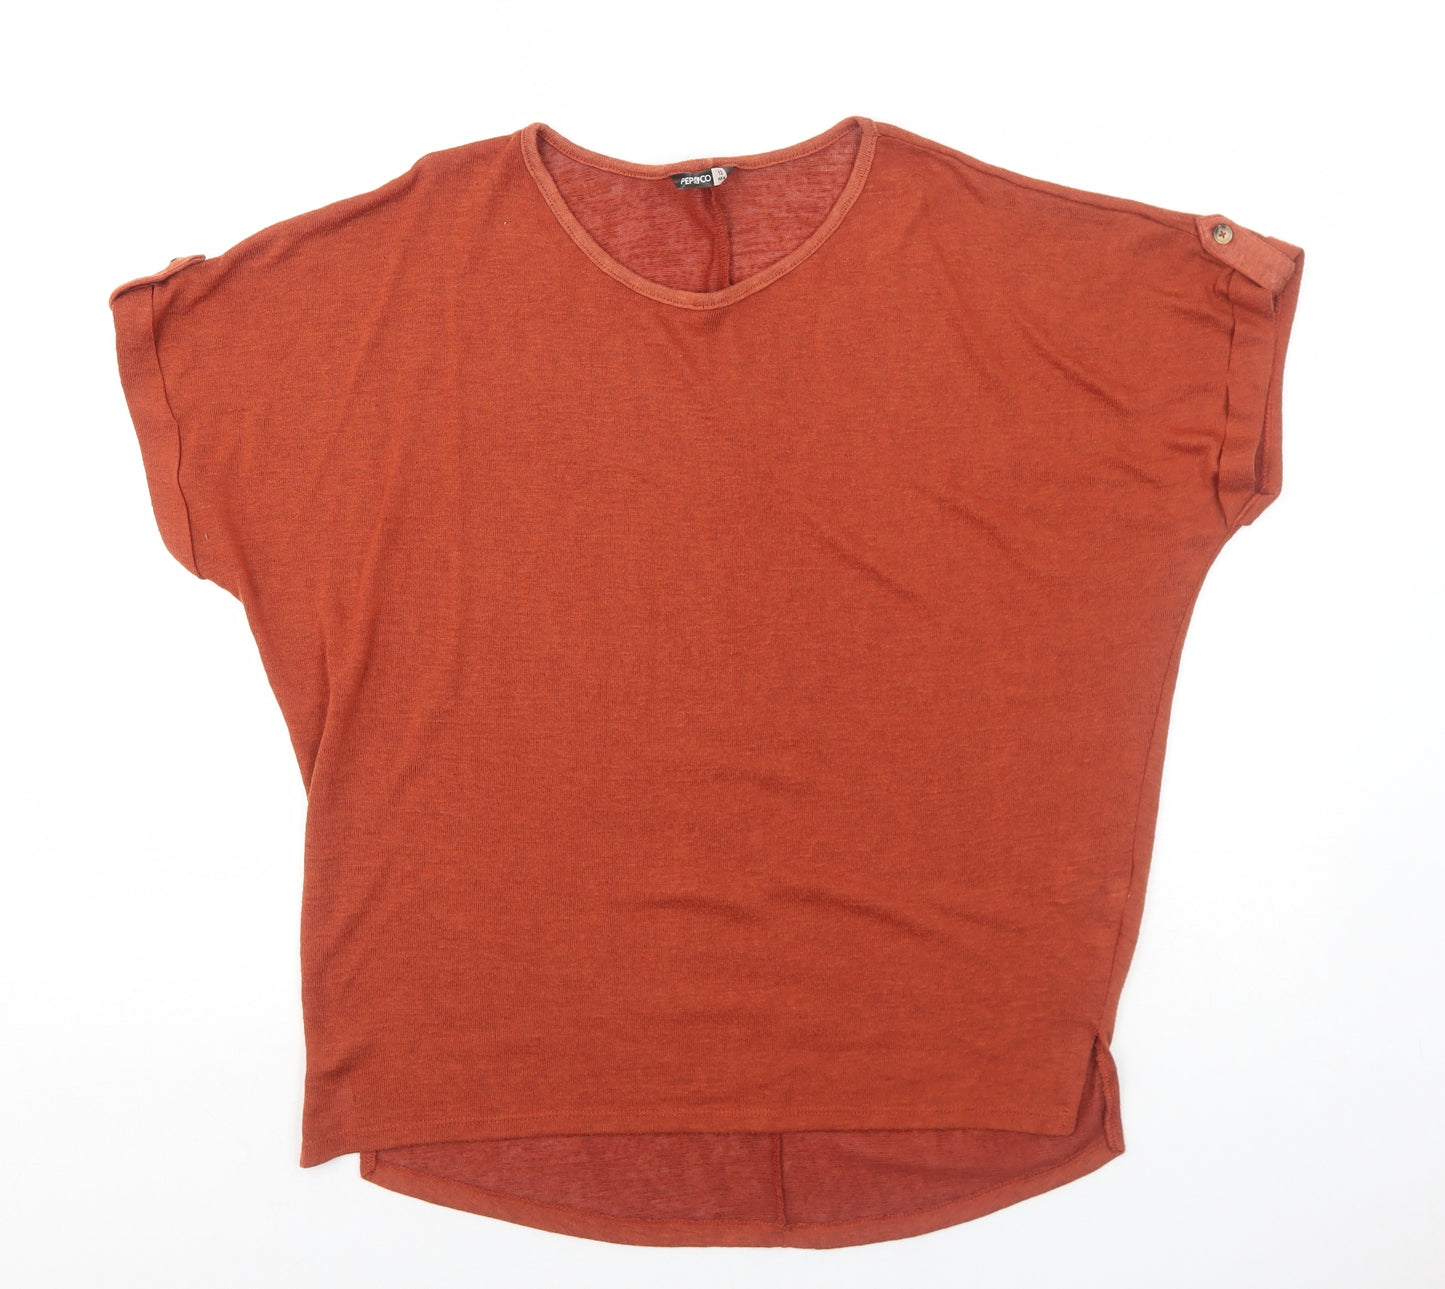 PEP&CO Womens Orange Polyester Basic T-Shirt Size 12 Round Neck